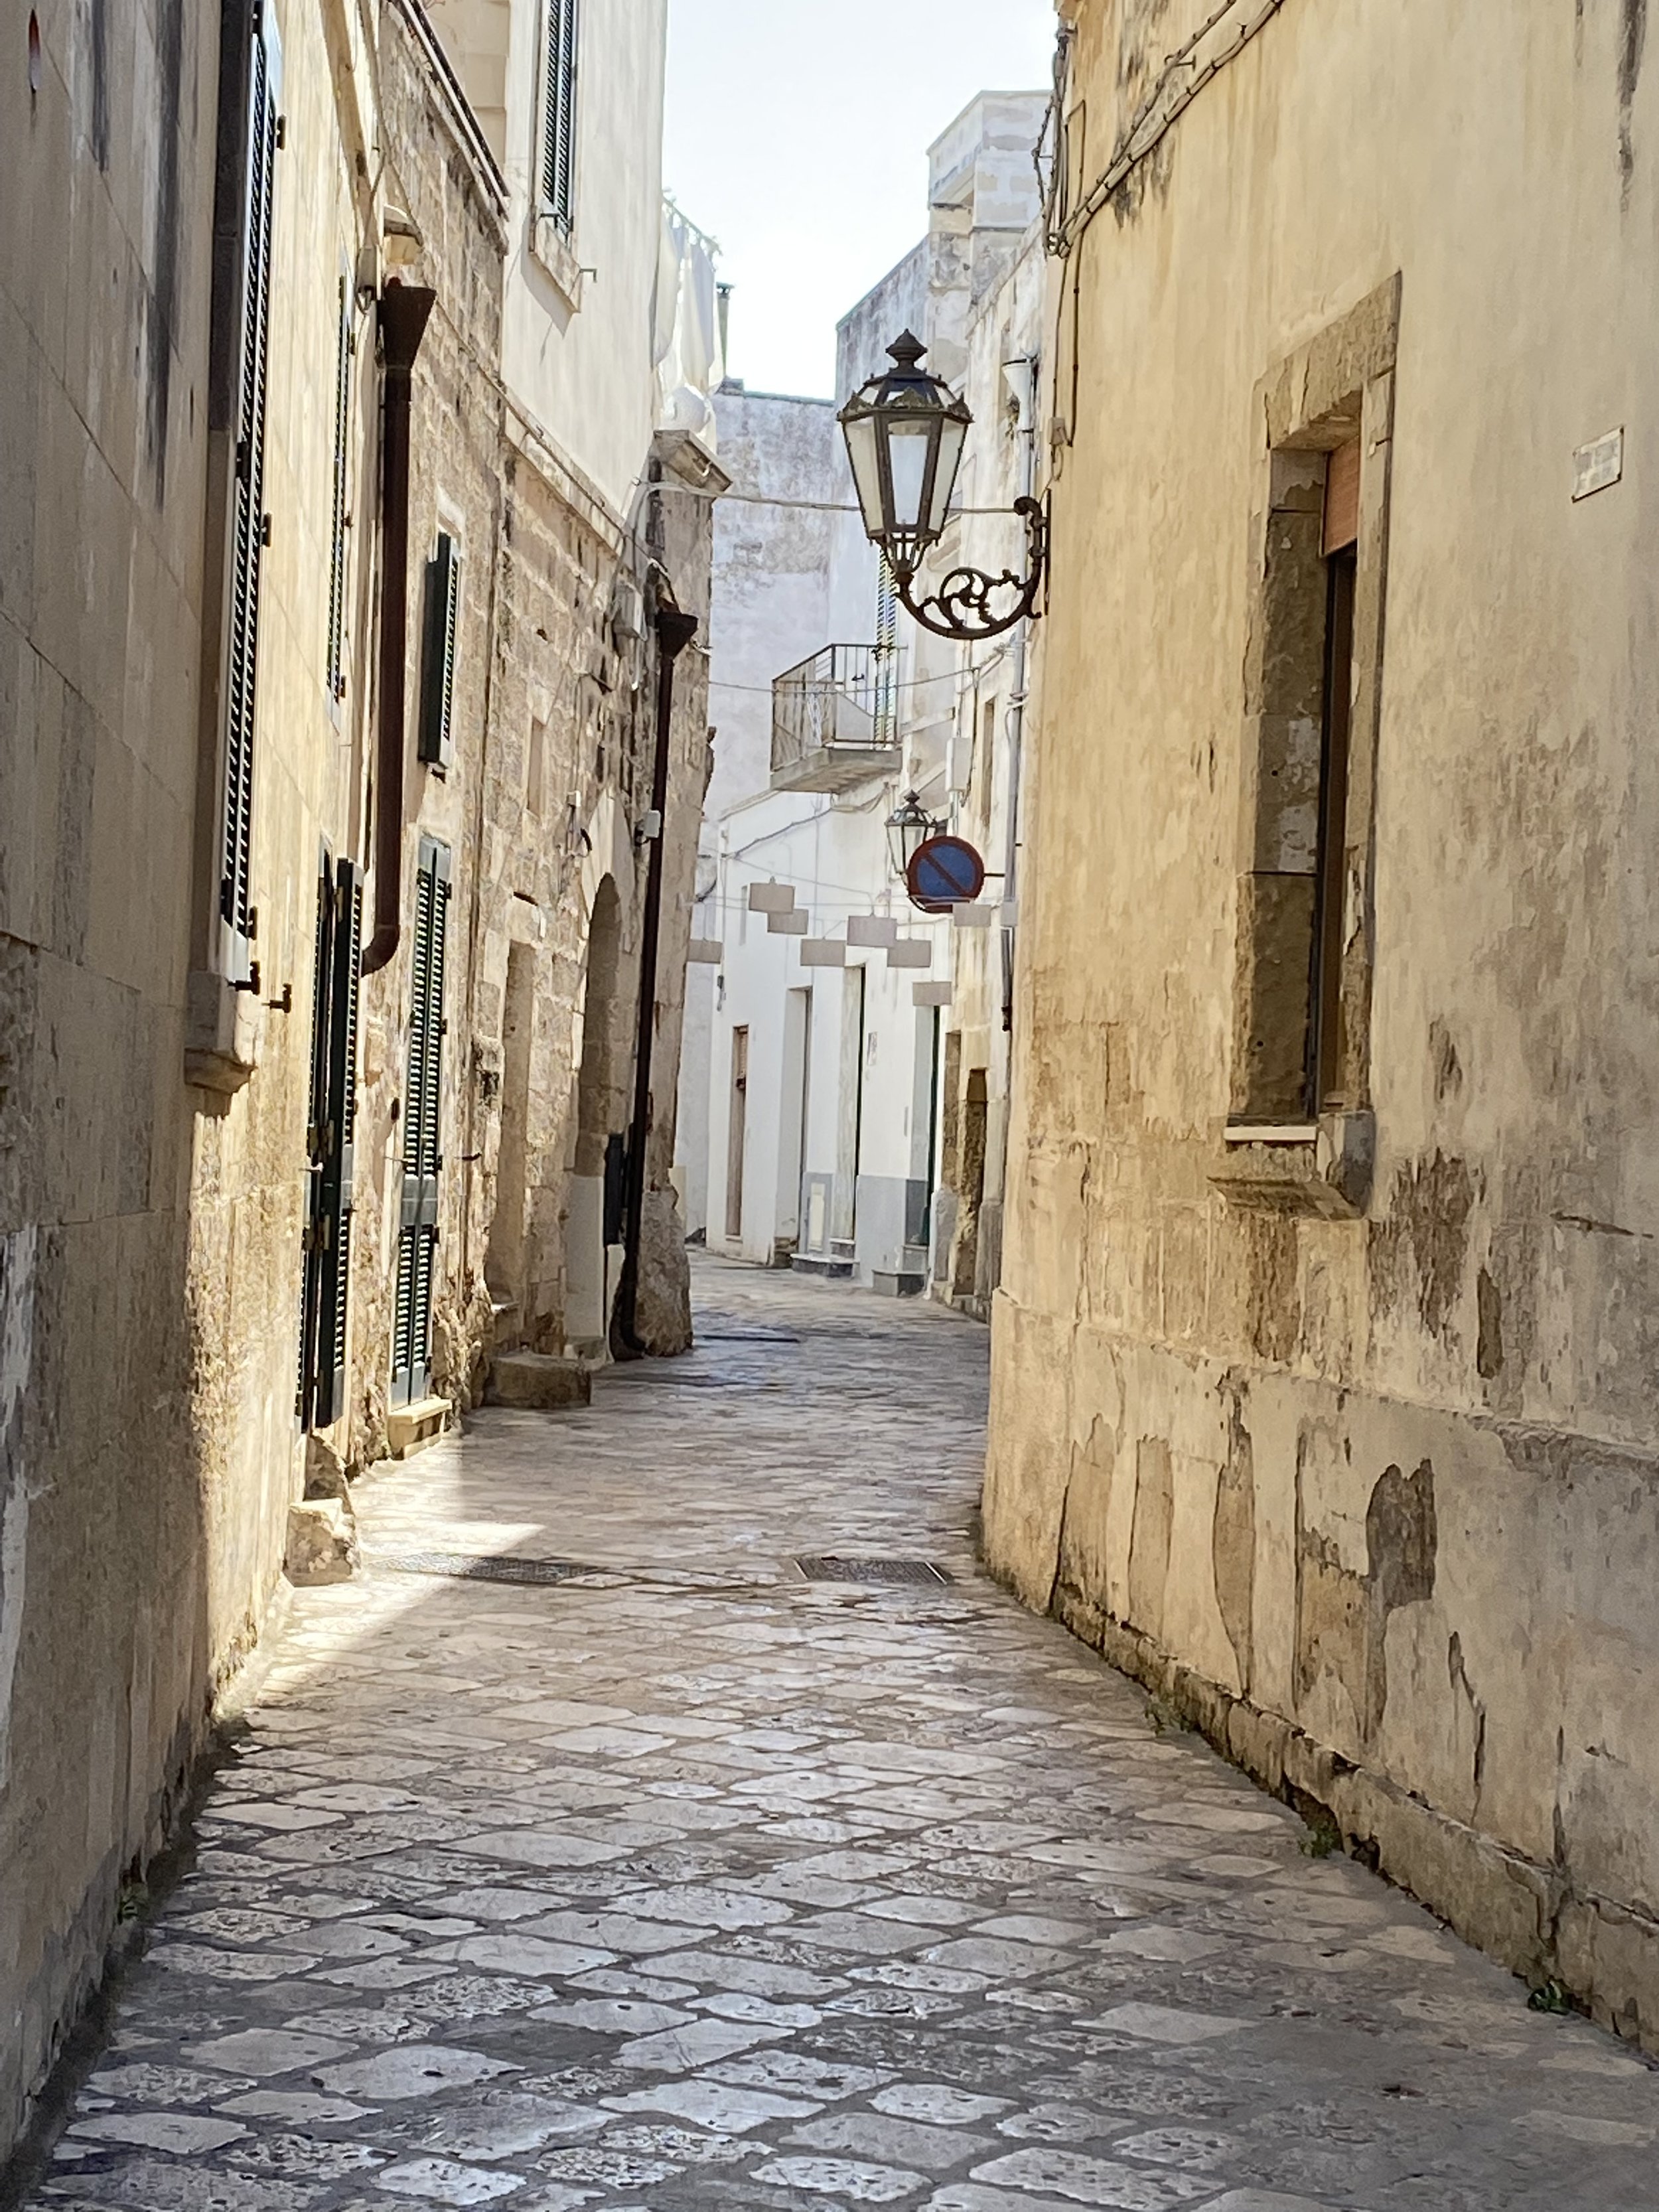 Old town streets of Corigliano d'Otranto